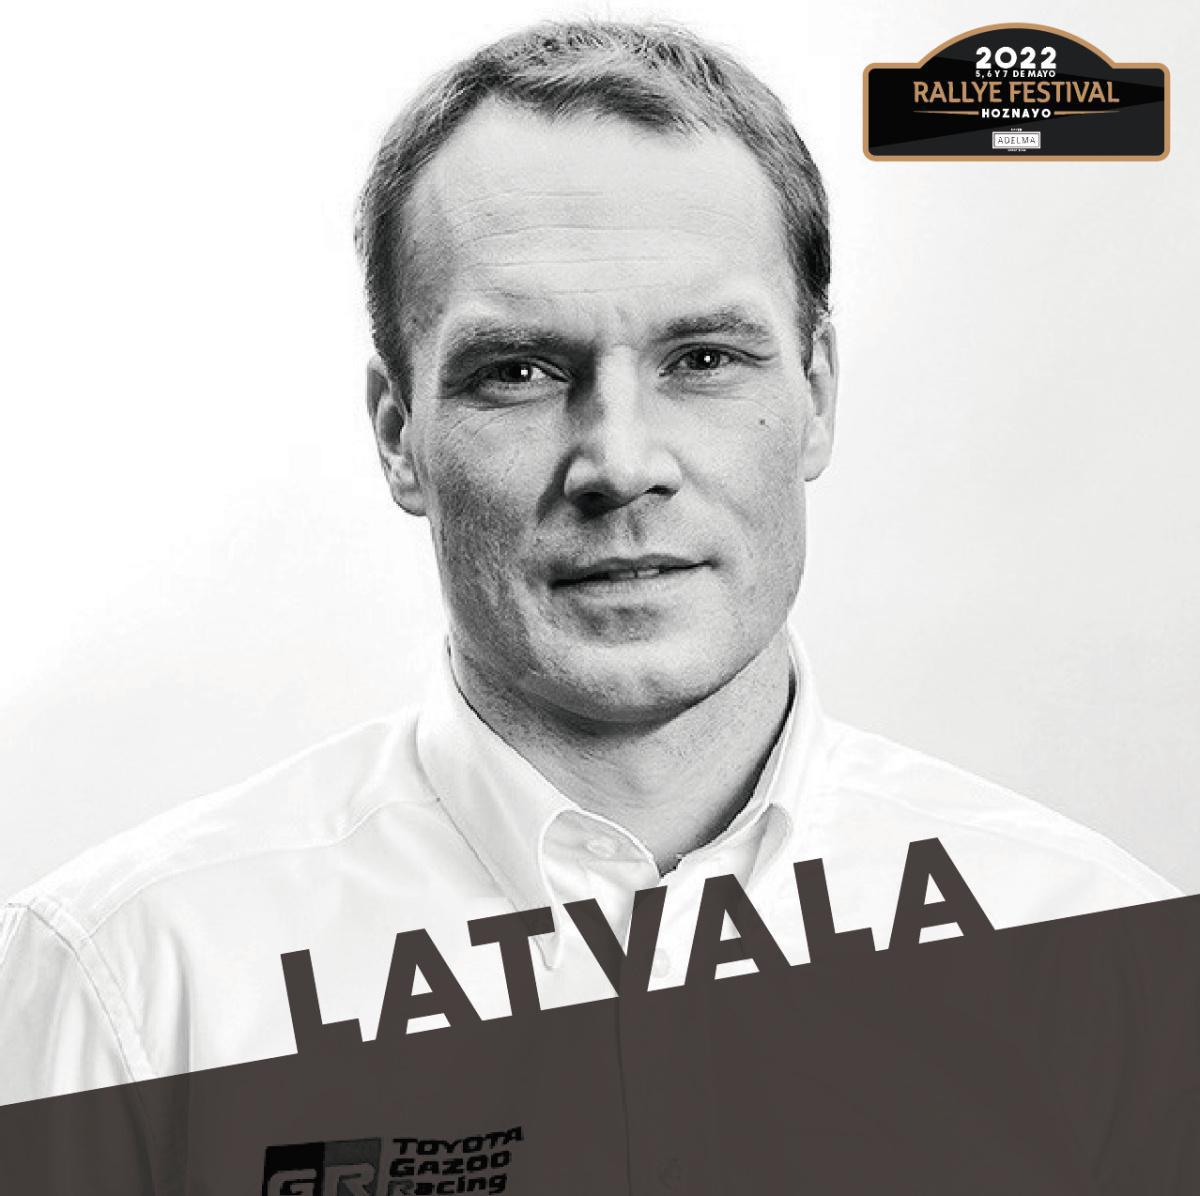 Jari-Matti Latvala confirmado para el Rallye Festival Hoznayo 2022